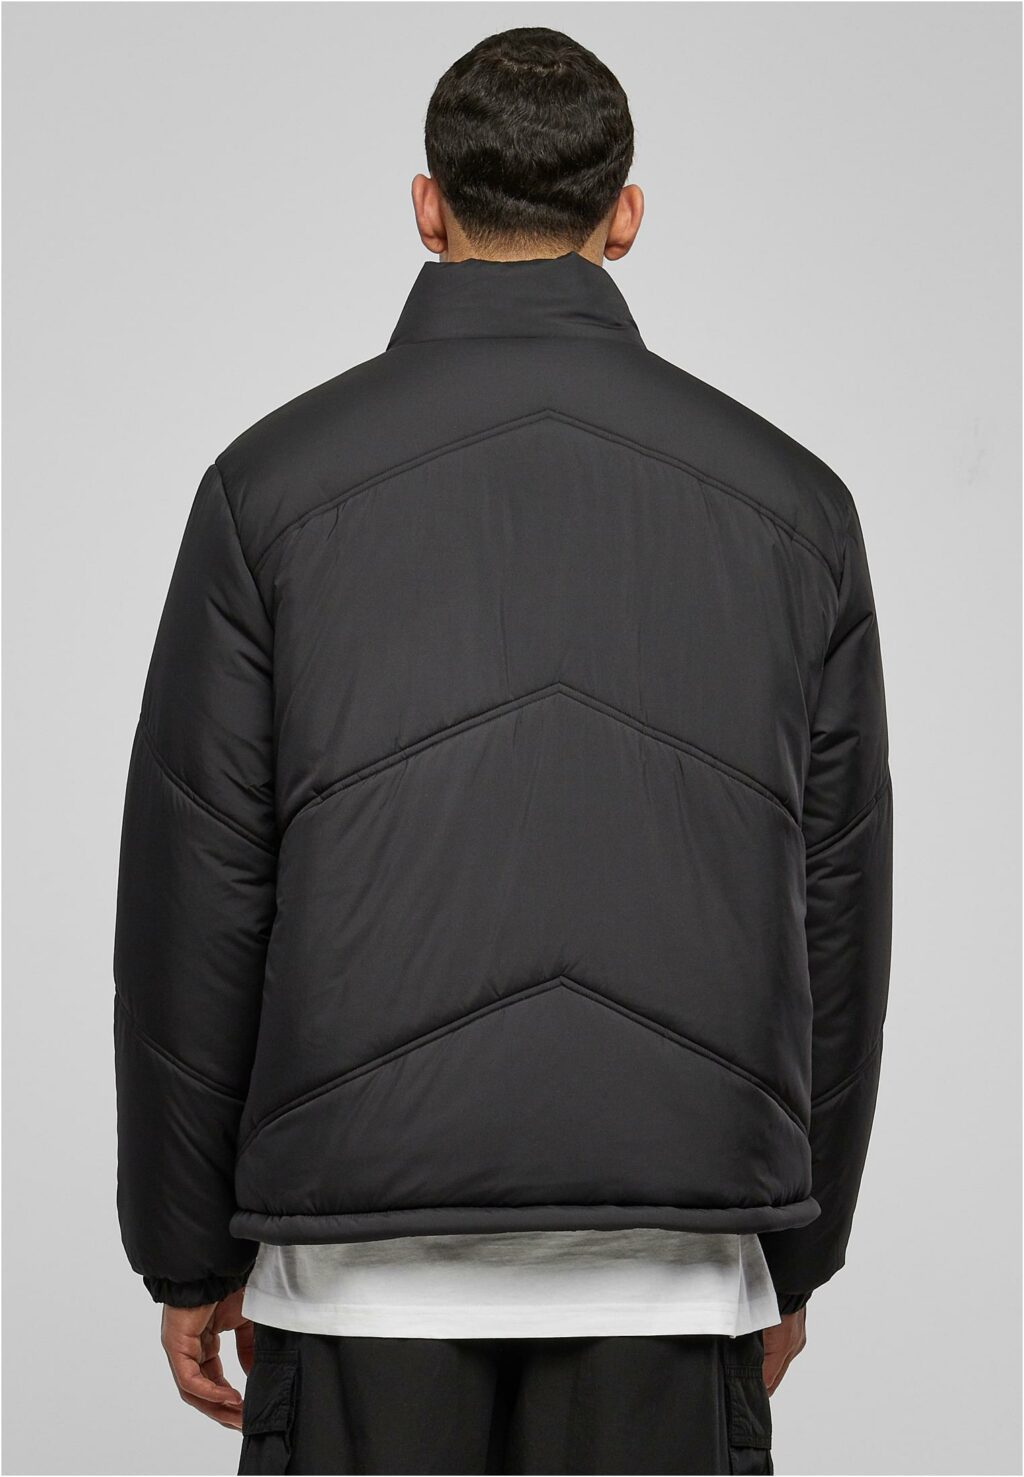 Urban Classics Arrow Puffer Jacket black TB6333